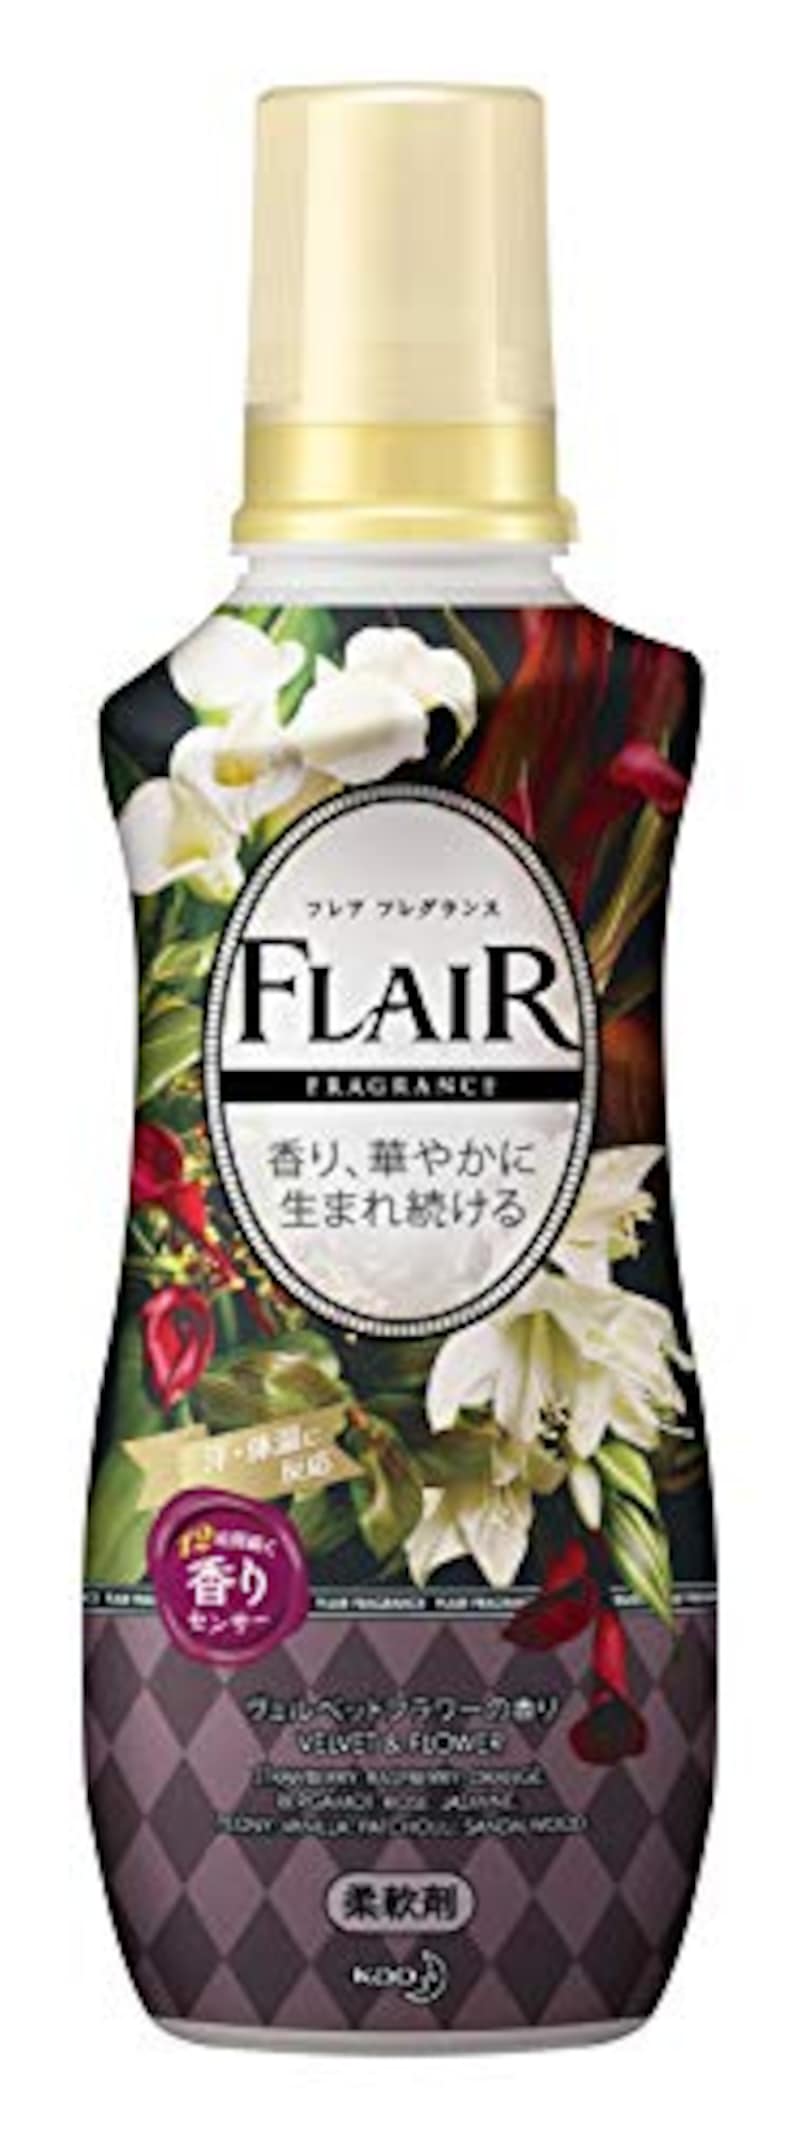 KAO（花王）,フレアフレグランス ヴェルベット&フラワーの香り